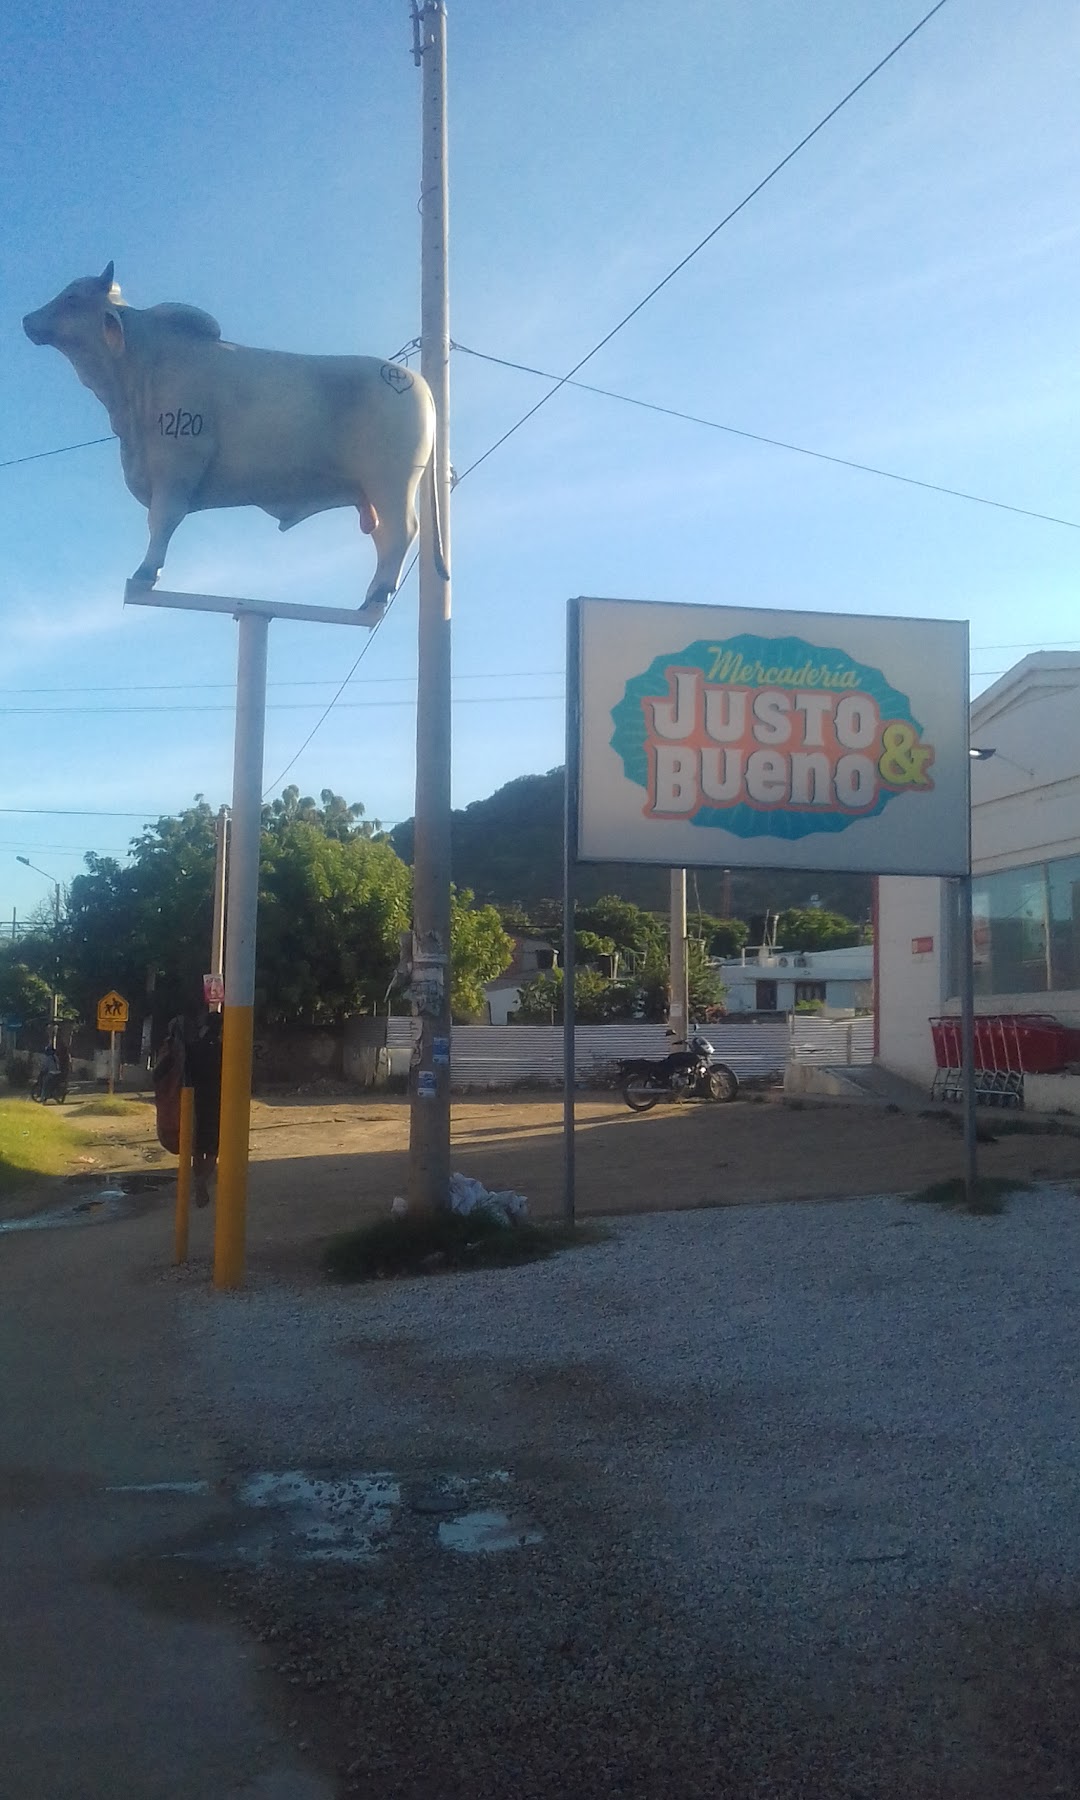 Mercaderia Justo & Bueno - Santa Marta Las Acacias